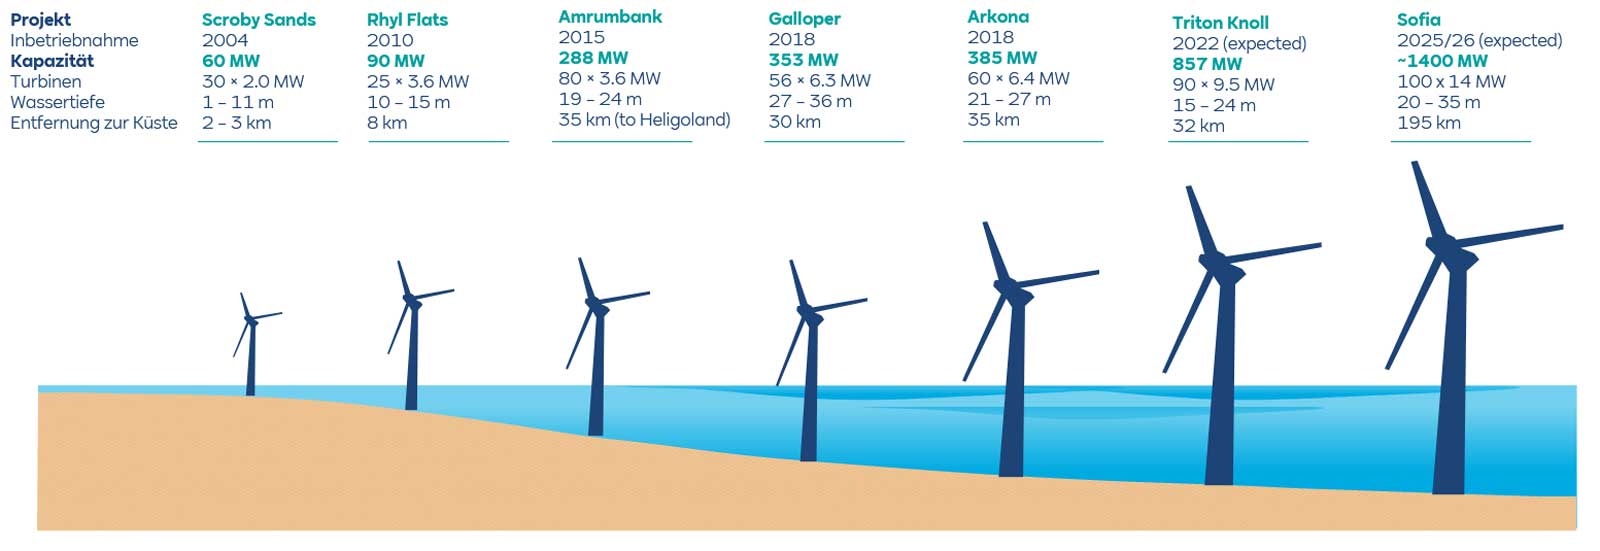 Die Evolution von Offshore-Windparks bei RWE – von 2004 bis 2026